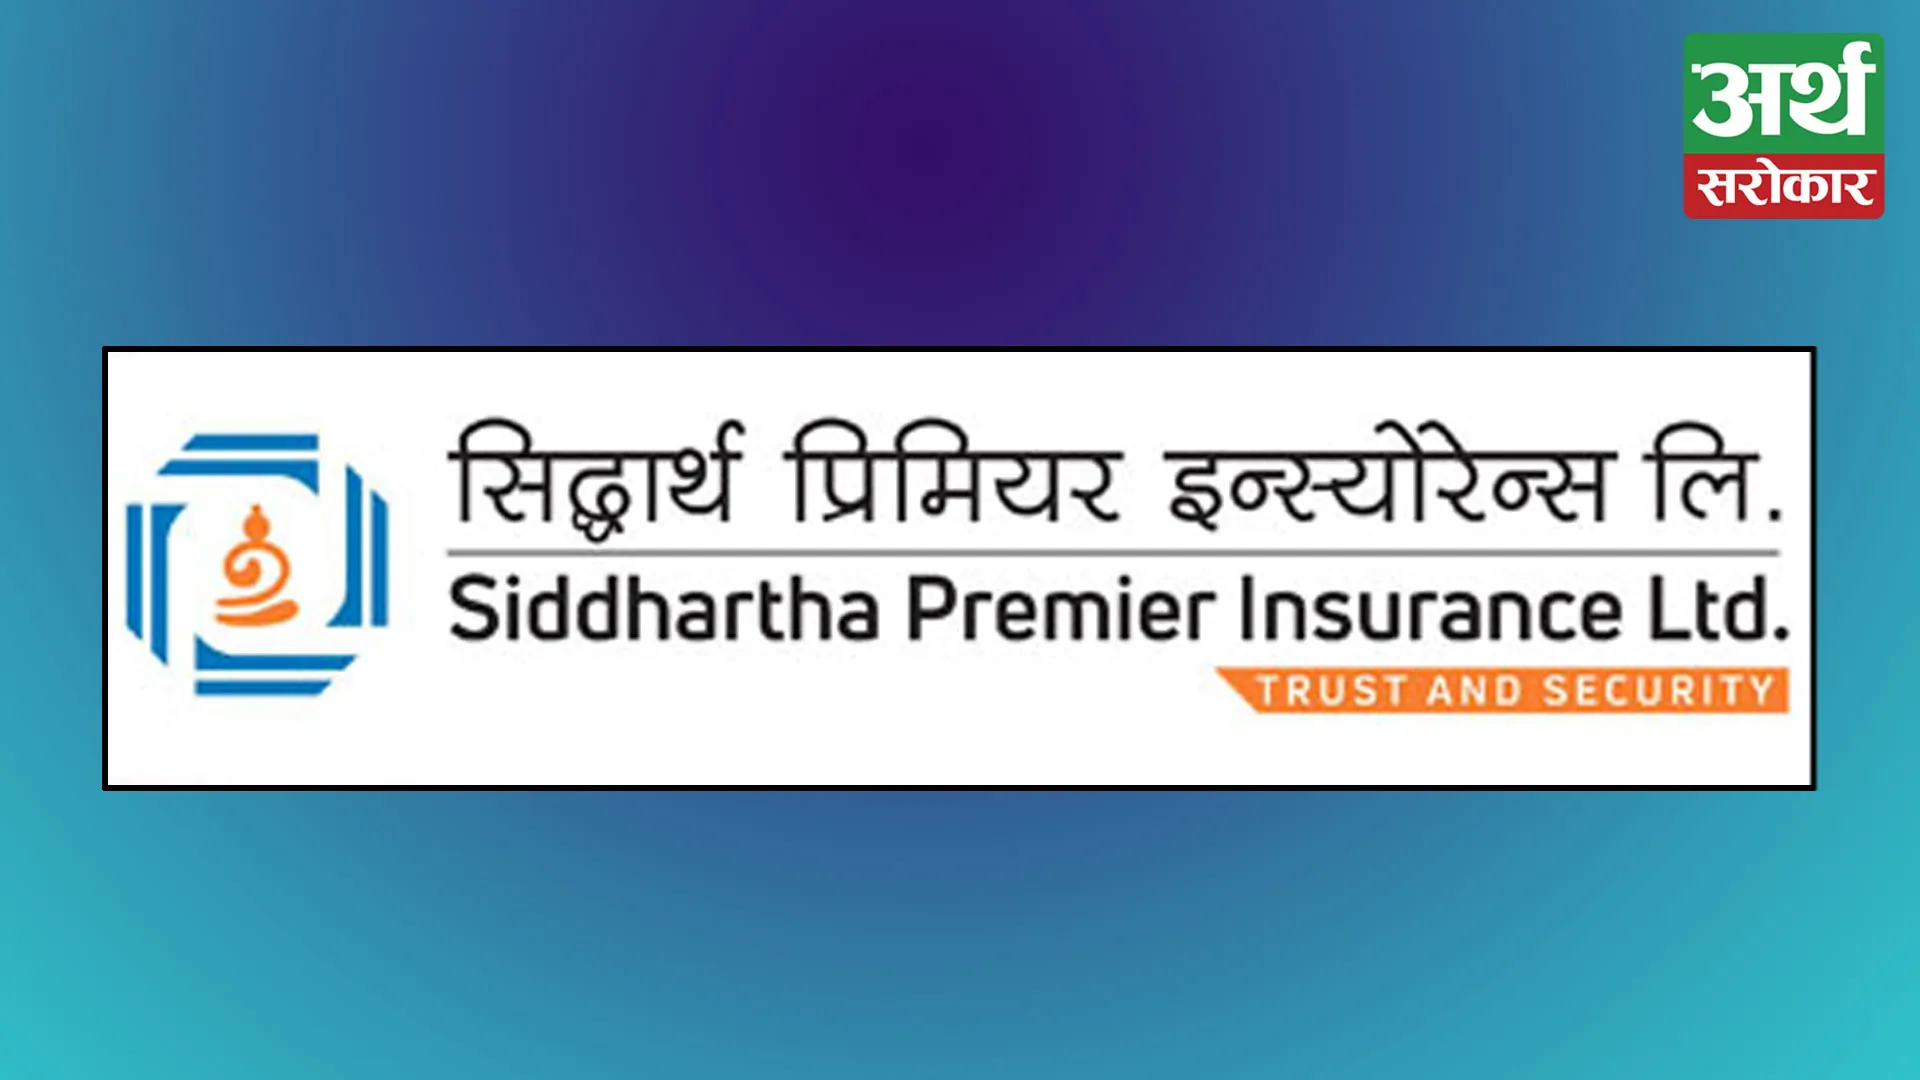 Siddhartha Premier Insurance announced a cash dividend